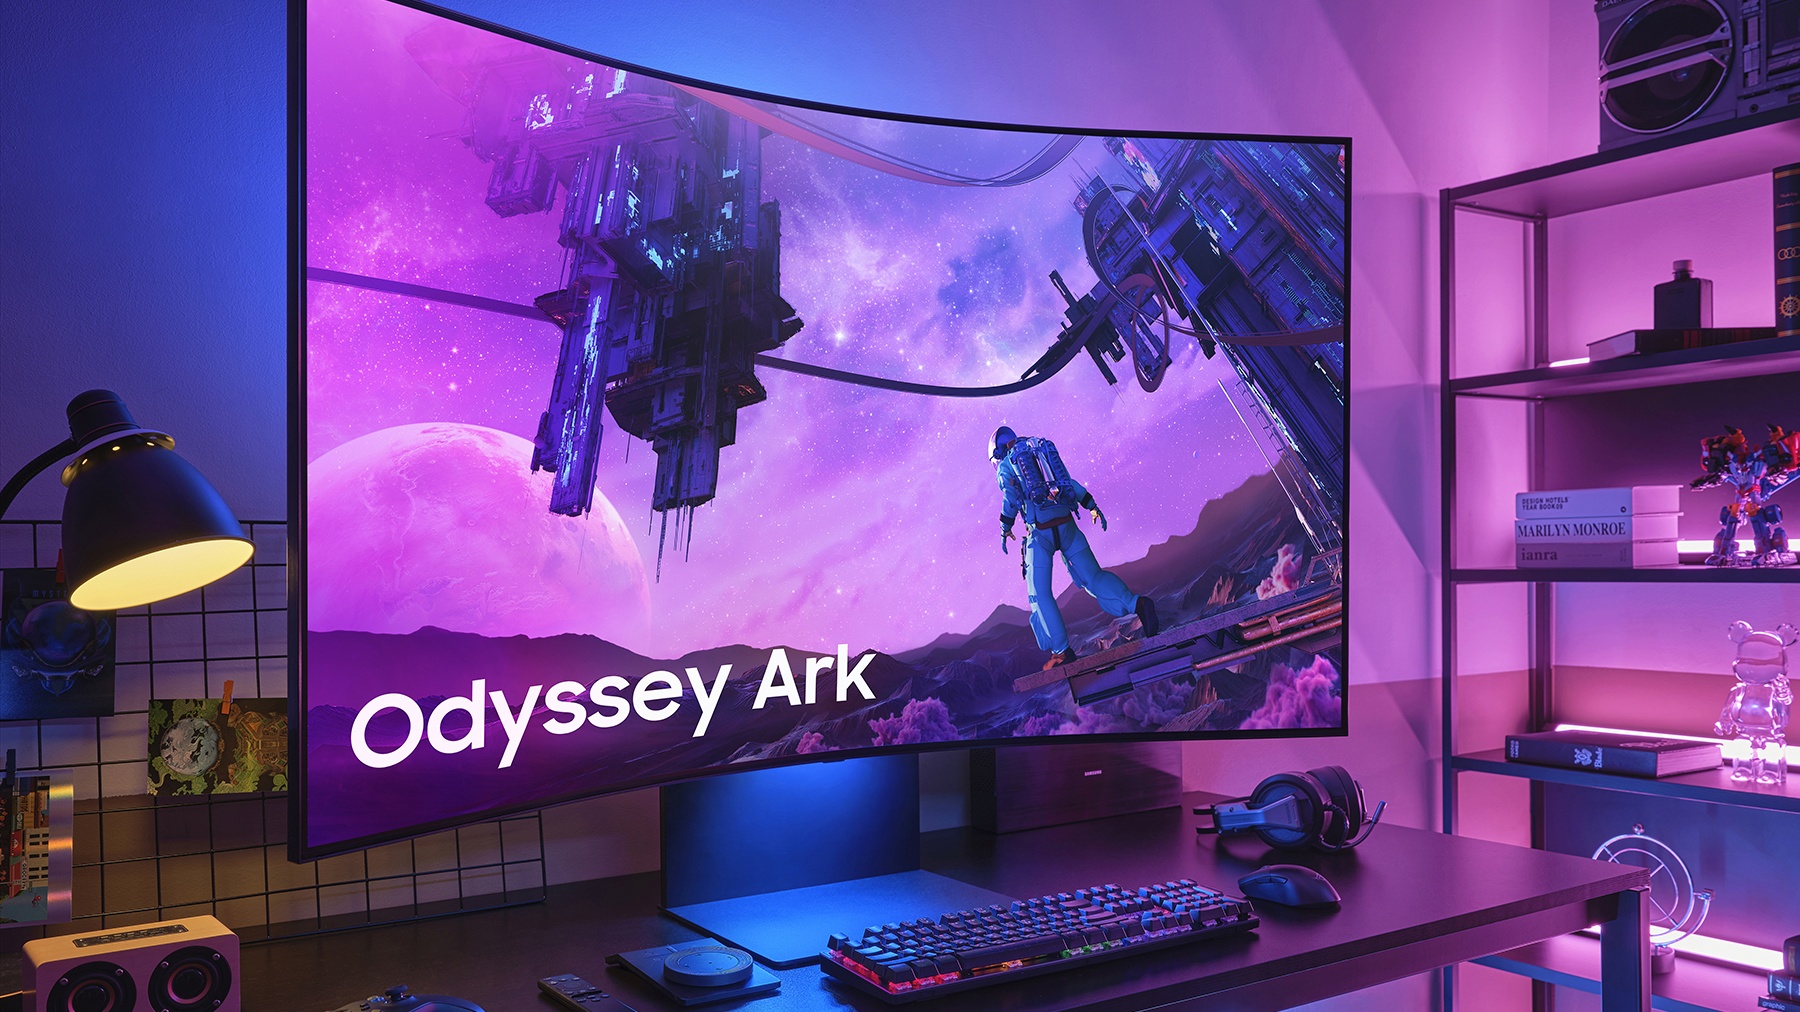 Der Odyssey Ark punkte mit XXL-Bildfläche, Curved-Display und Dreiteilungs-Option